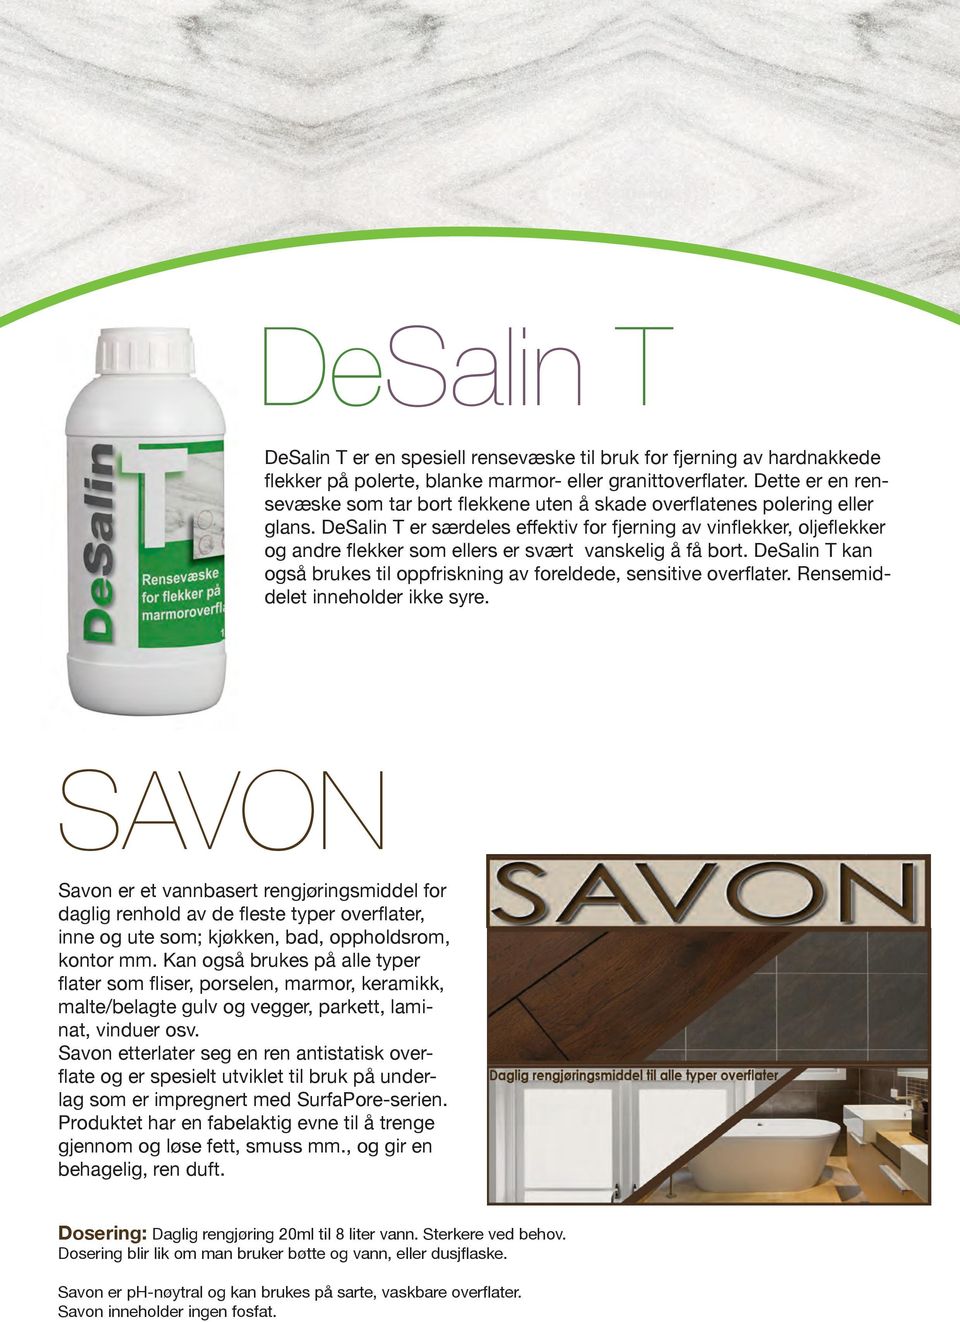 DeSalin T er særdeles effektiv for fjerning av vinflekker, oljeflekker og andre flekker som ellers er svært vanskelig å få bort.